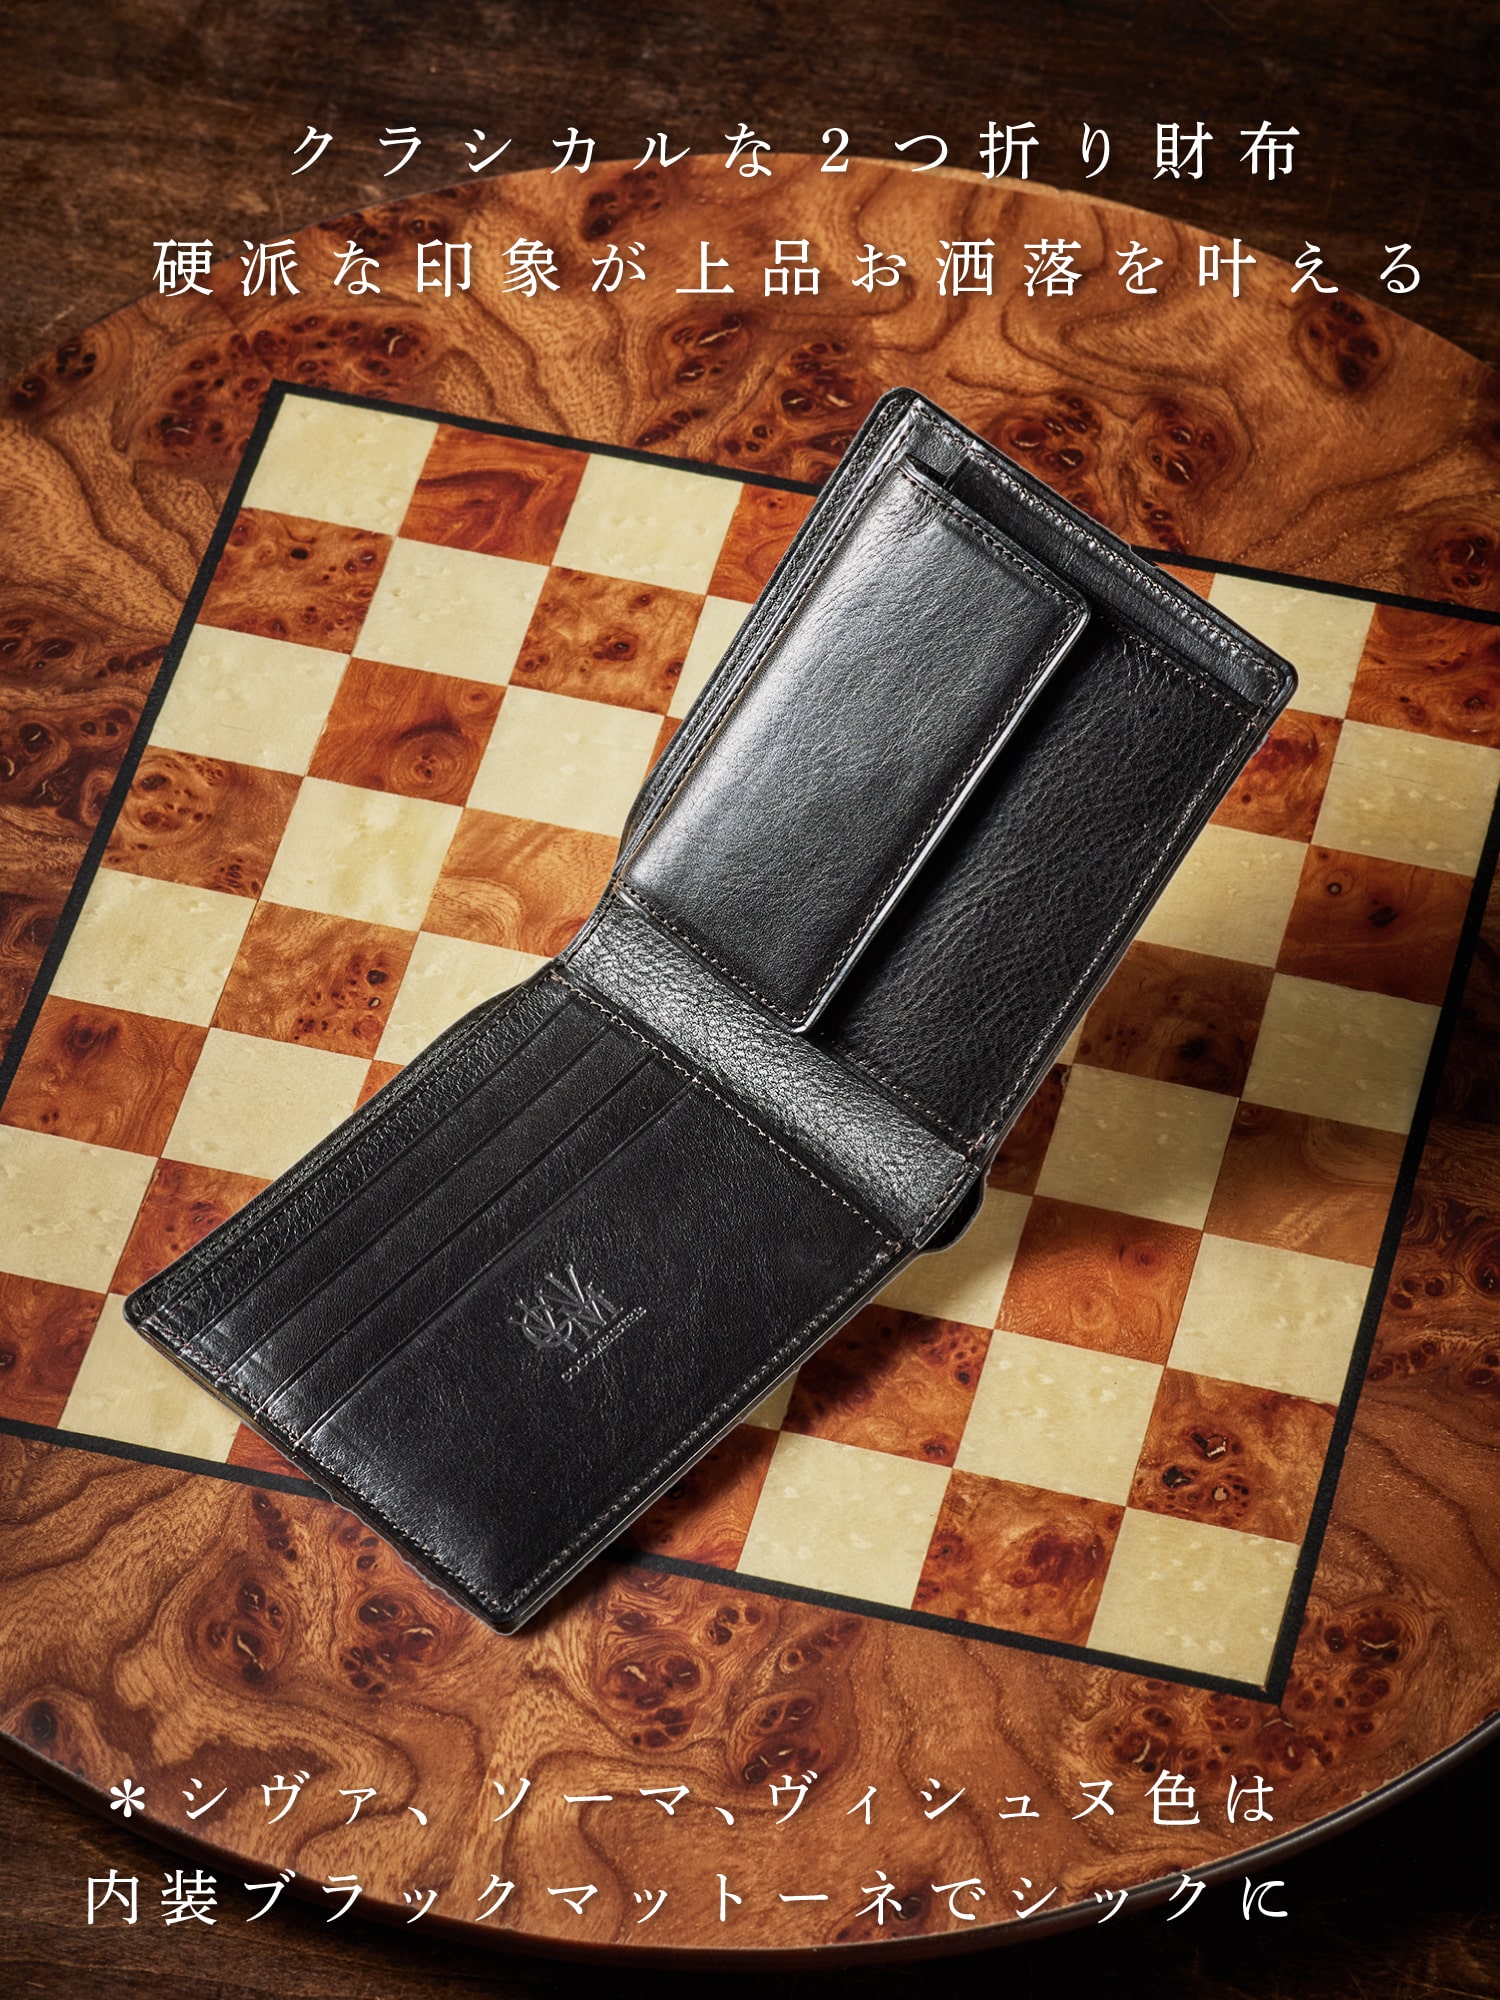 チェスボード ビショップ | ココマイスター公式サイト